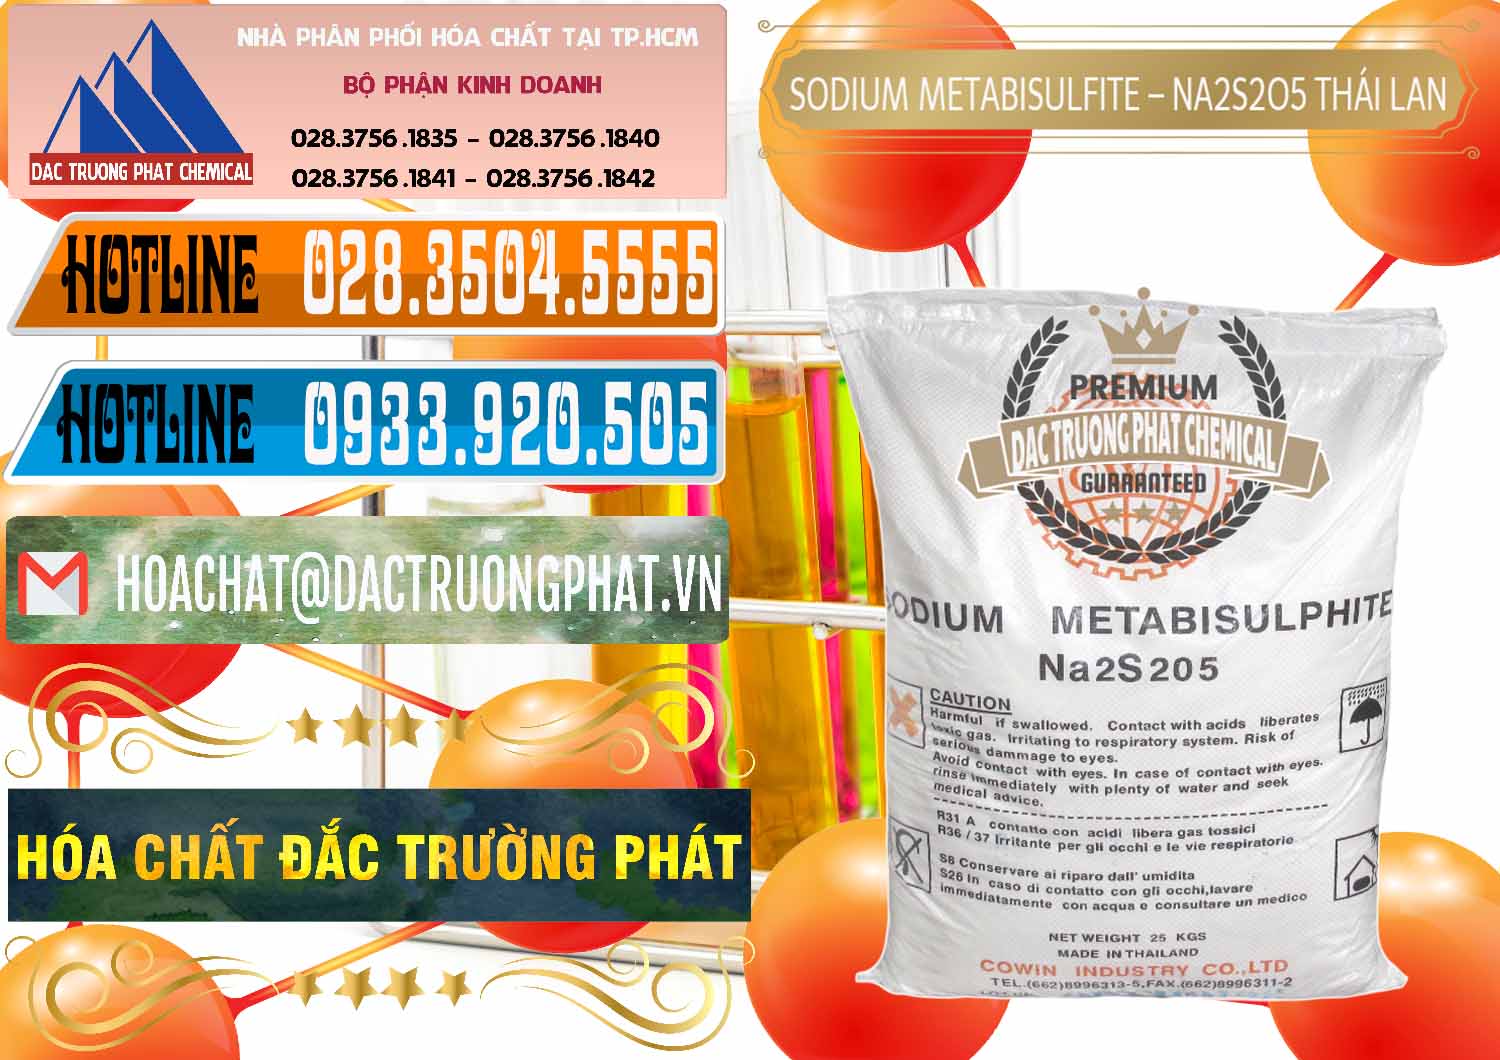 Nơi chuyên cung cấp _ bán Sodium Metabisulfite - NA2S2O5 Thái Lan Cowin - 0145 - Công ty kinh doanh - cung cấp hóa chất tại TP.HCM - stmp.net